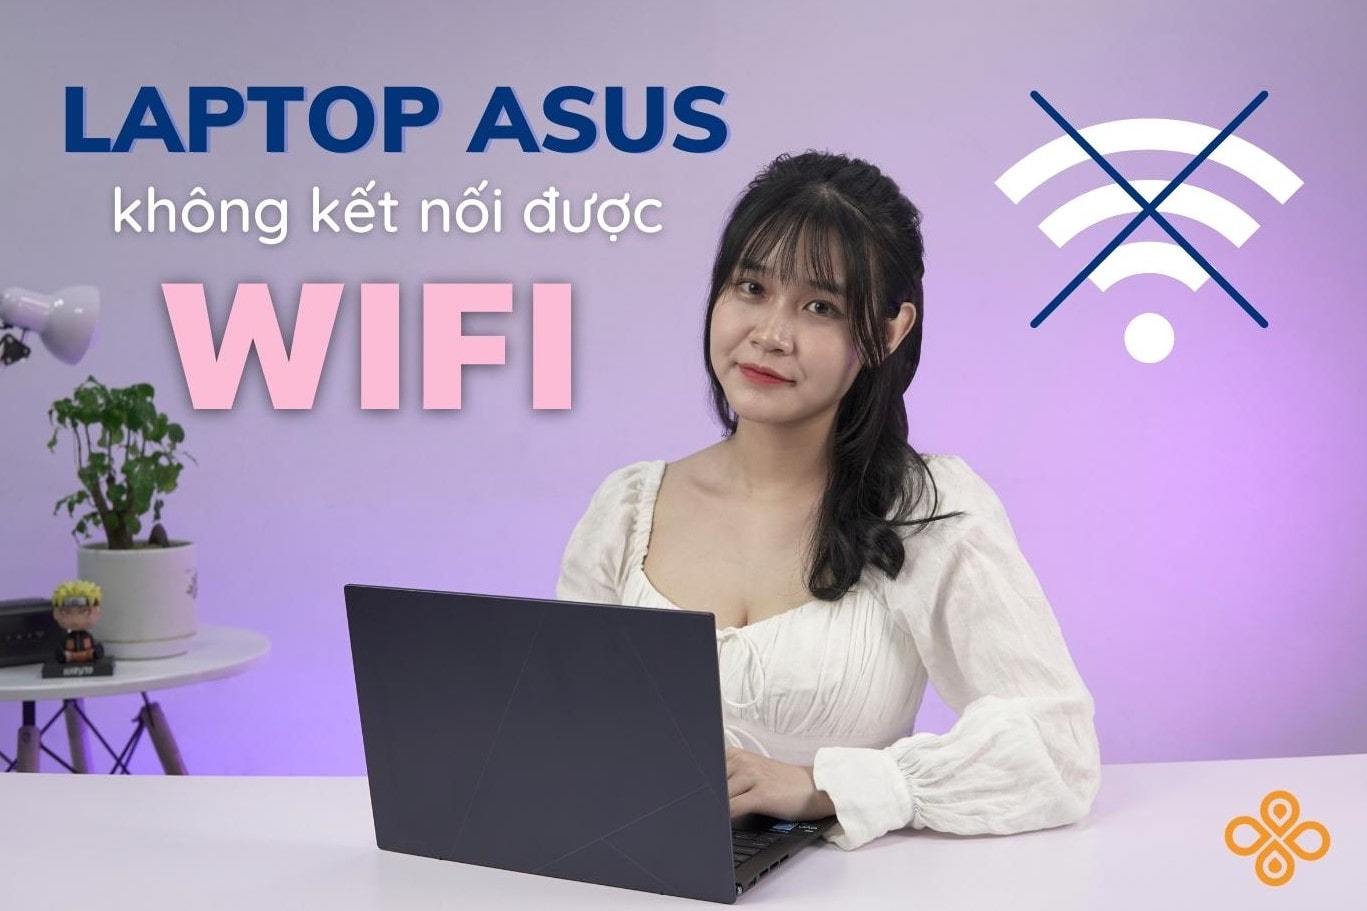 Khắc phục tình trạng laptop Asus không kết nối được wifi nhanh nhất